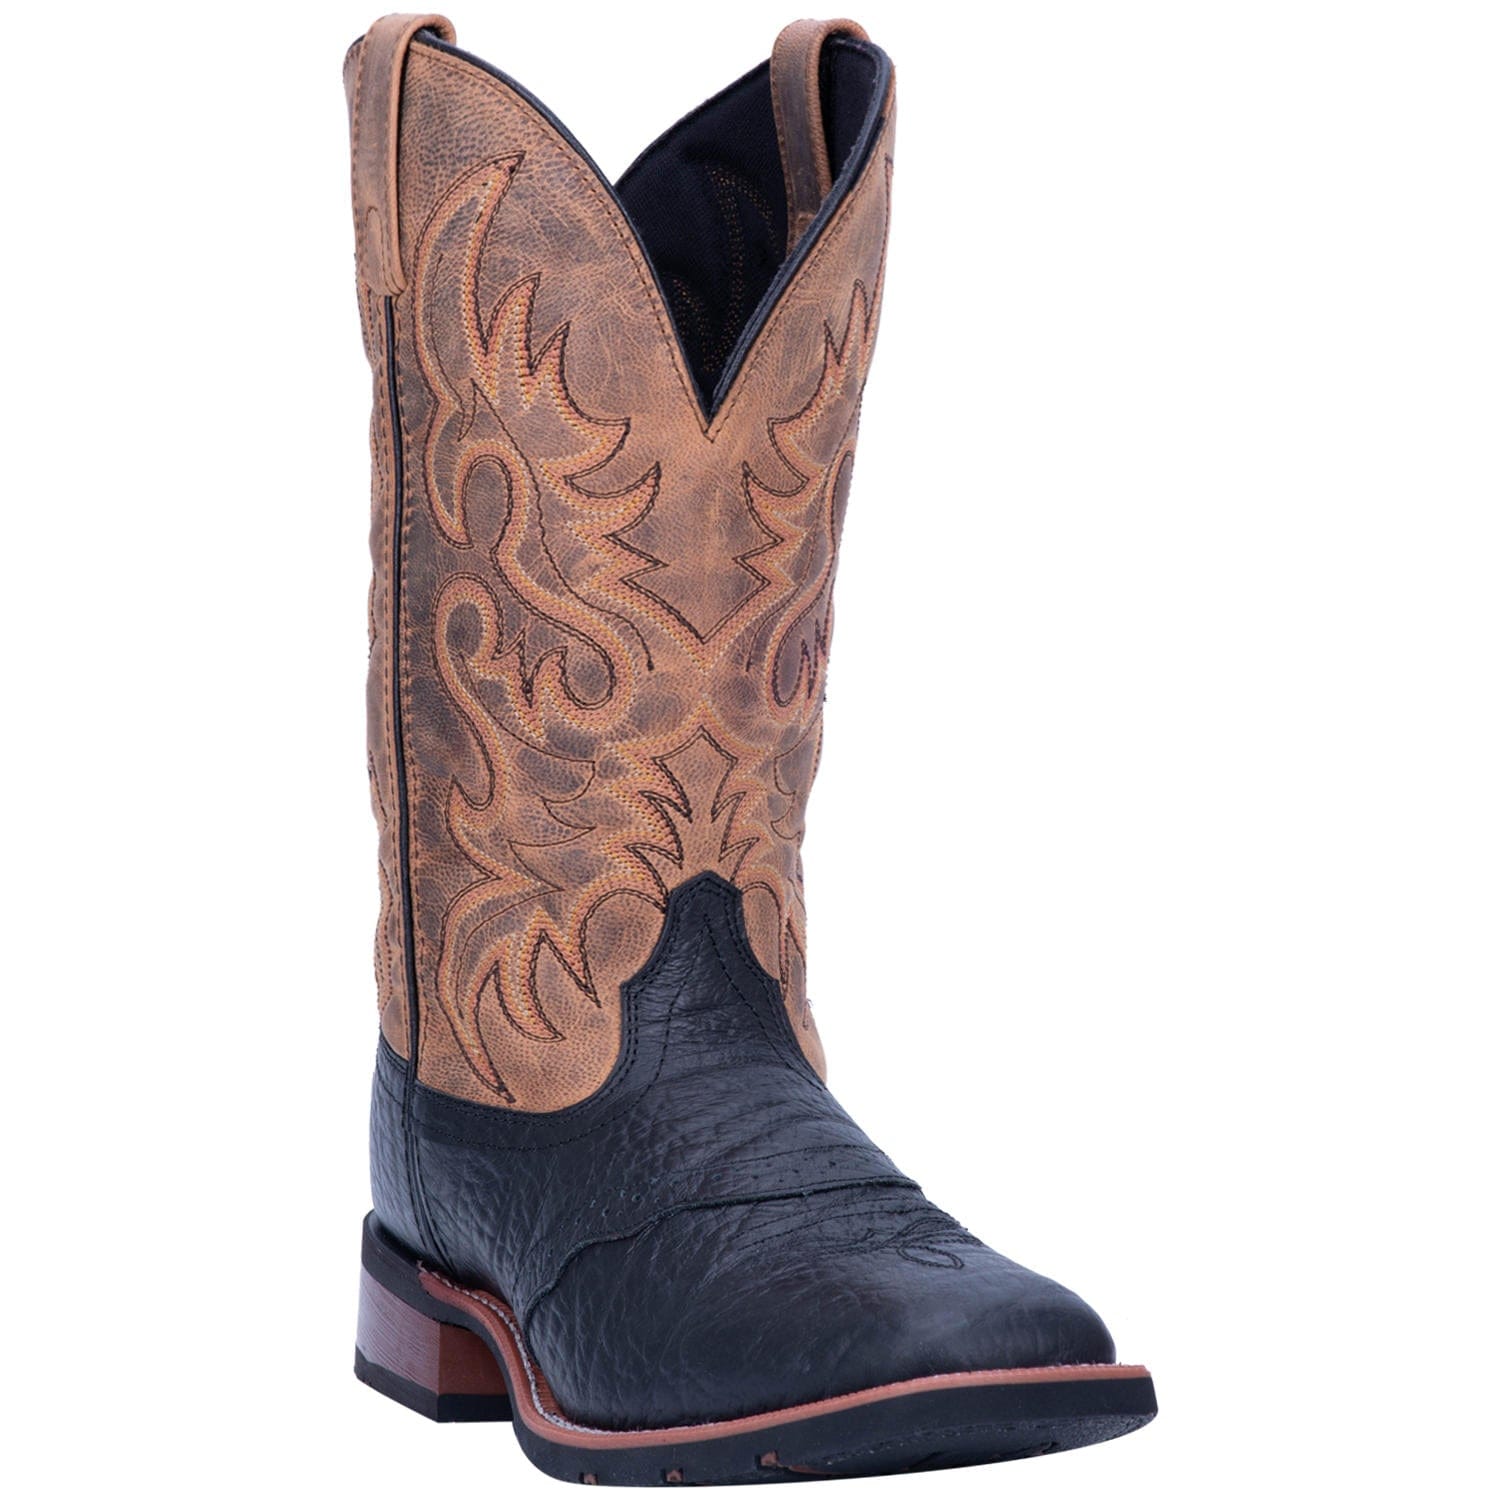 LAREDO Boots Laredo Men's Topeka Black Leather Cowboy Boots 7824